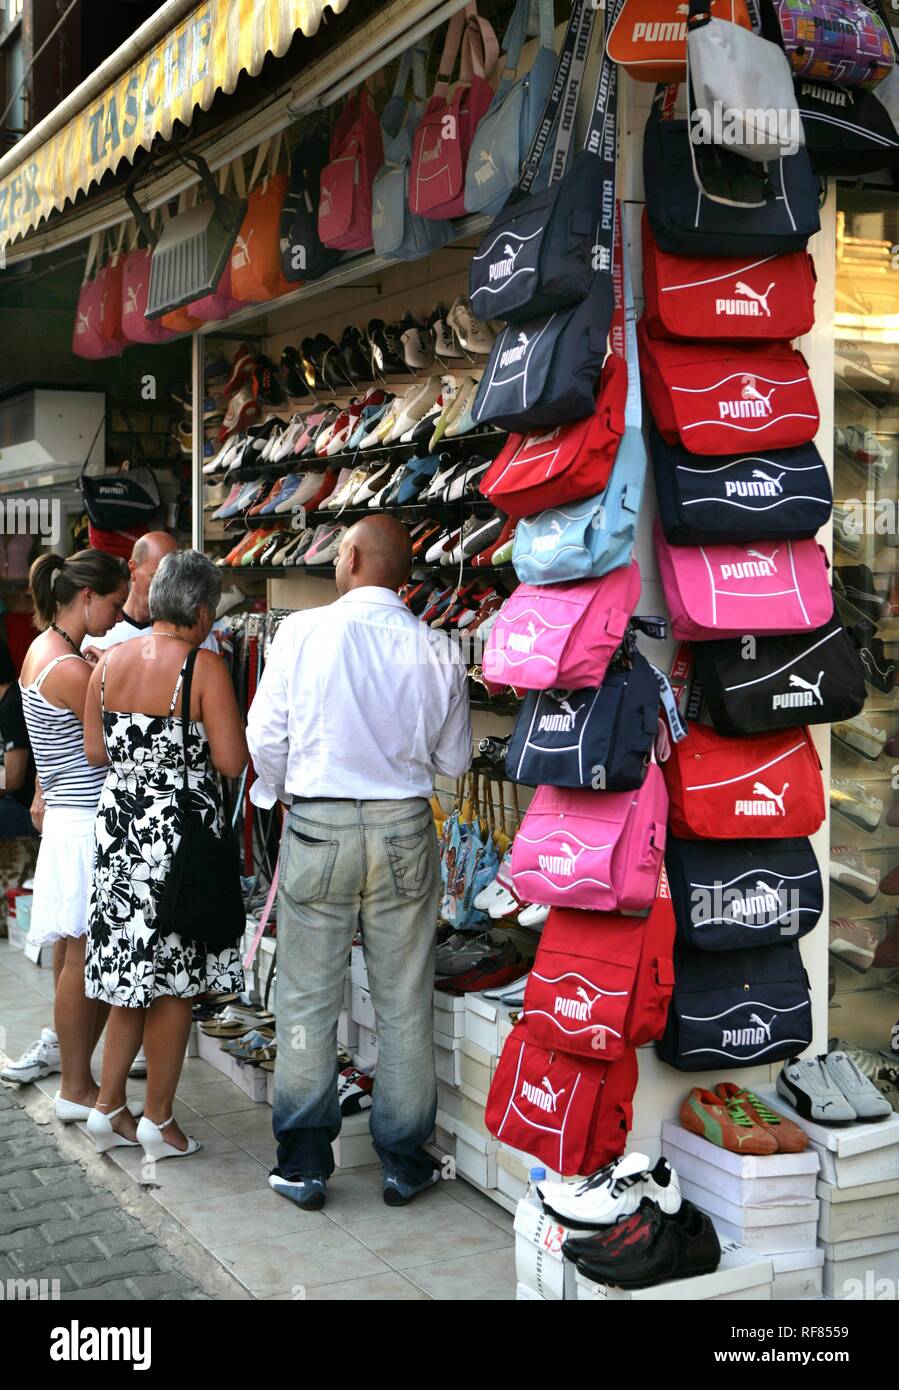 TUR Türkei Side Türkische Riviera. Shop mit gefälschten Produkte Puma Schuhe  und Taschen in der Altstadt Stockfotografie - Alamy